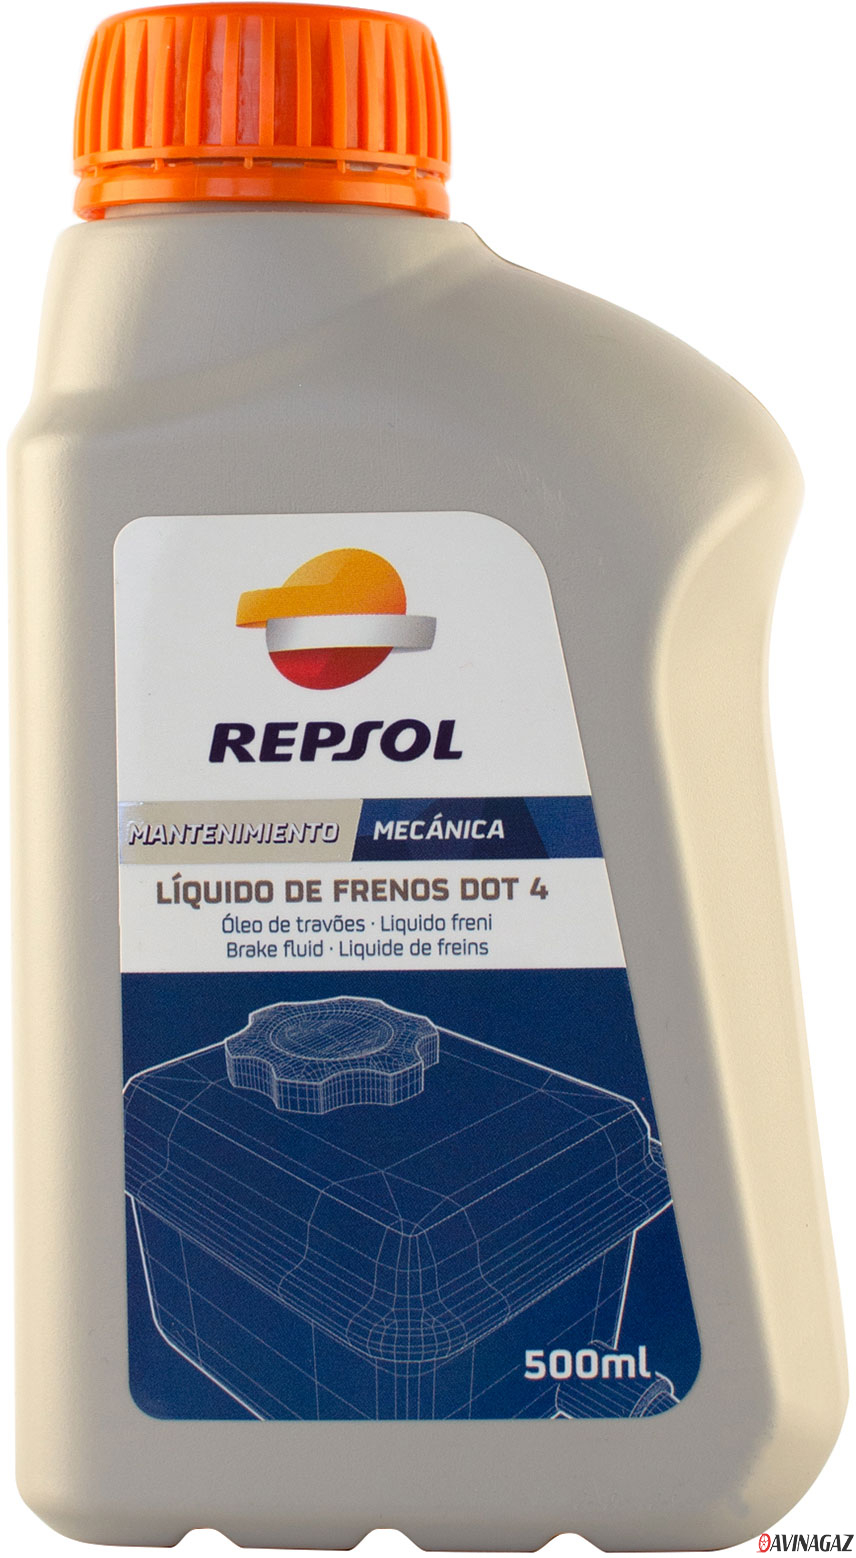 Тормозная жидкость - REPSOL LIQUIDO DE FRENOS DOT 4, 500ml